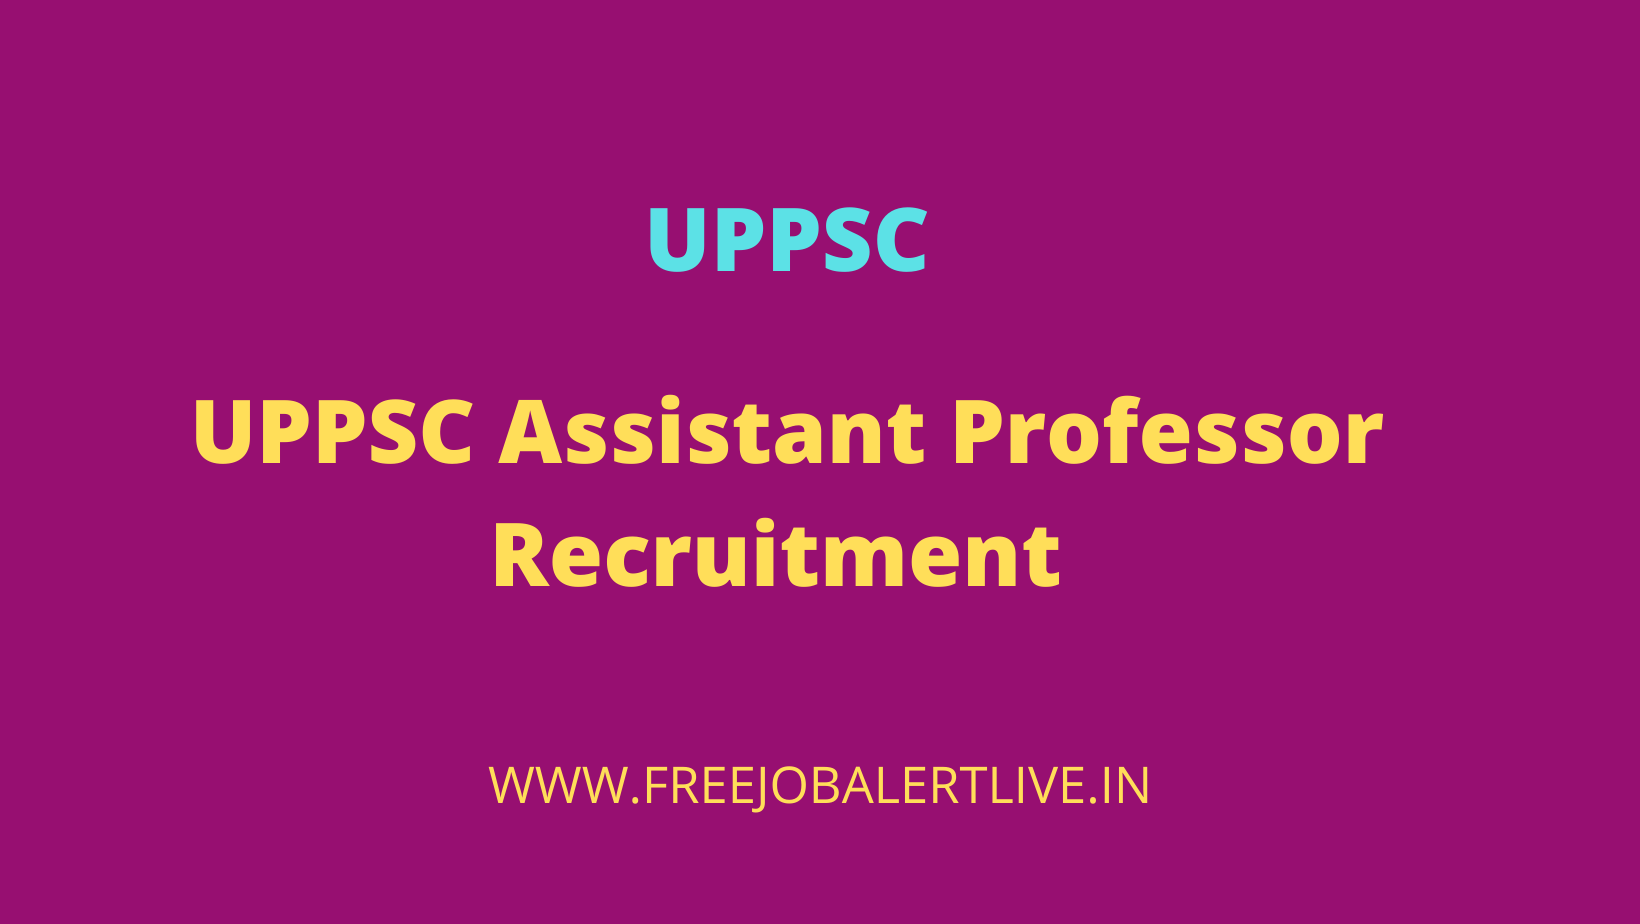 UPPSC Assistant Professor Recruitment 